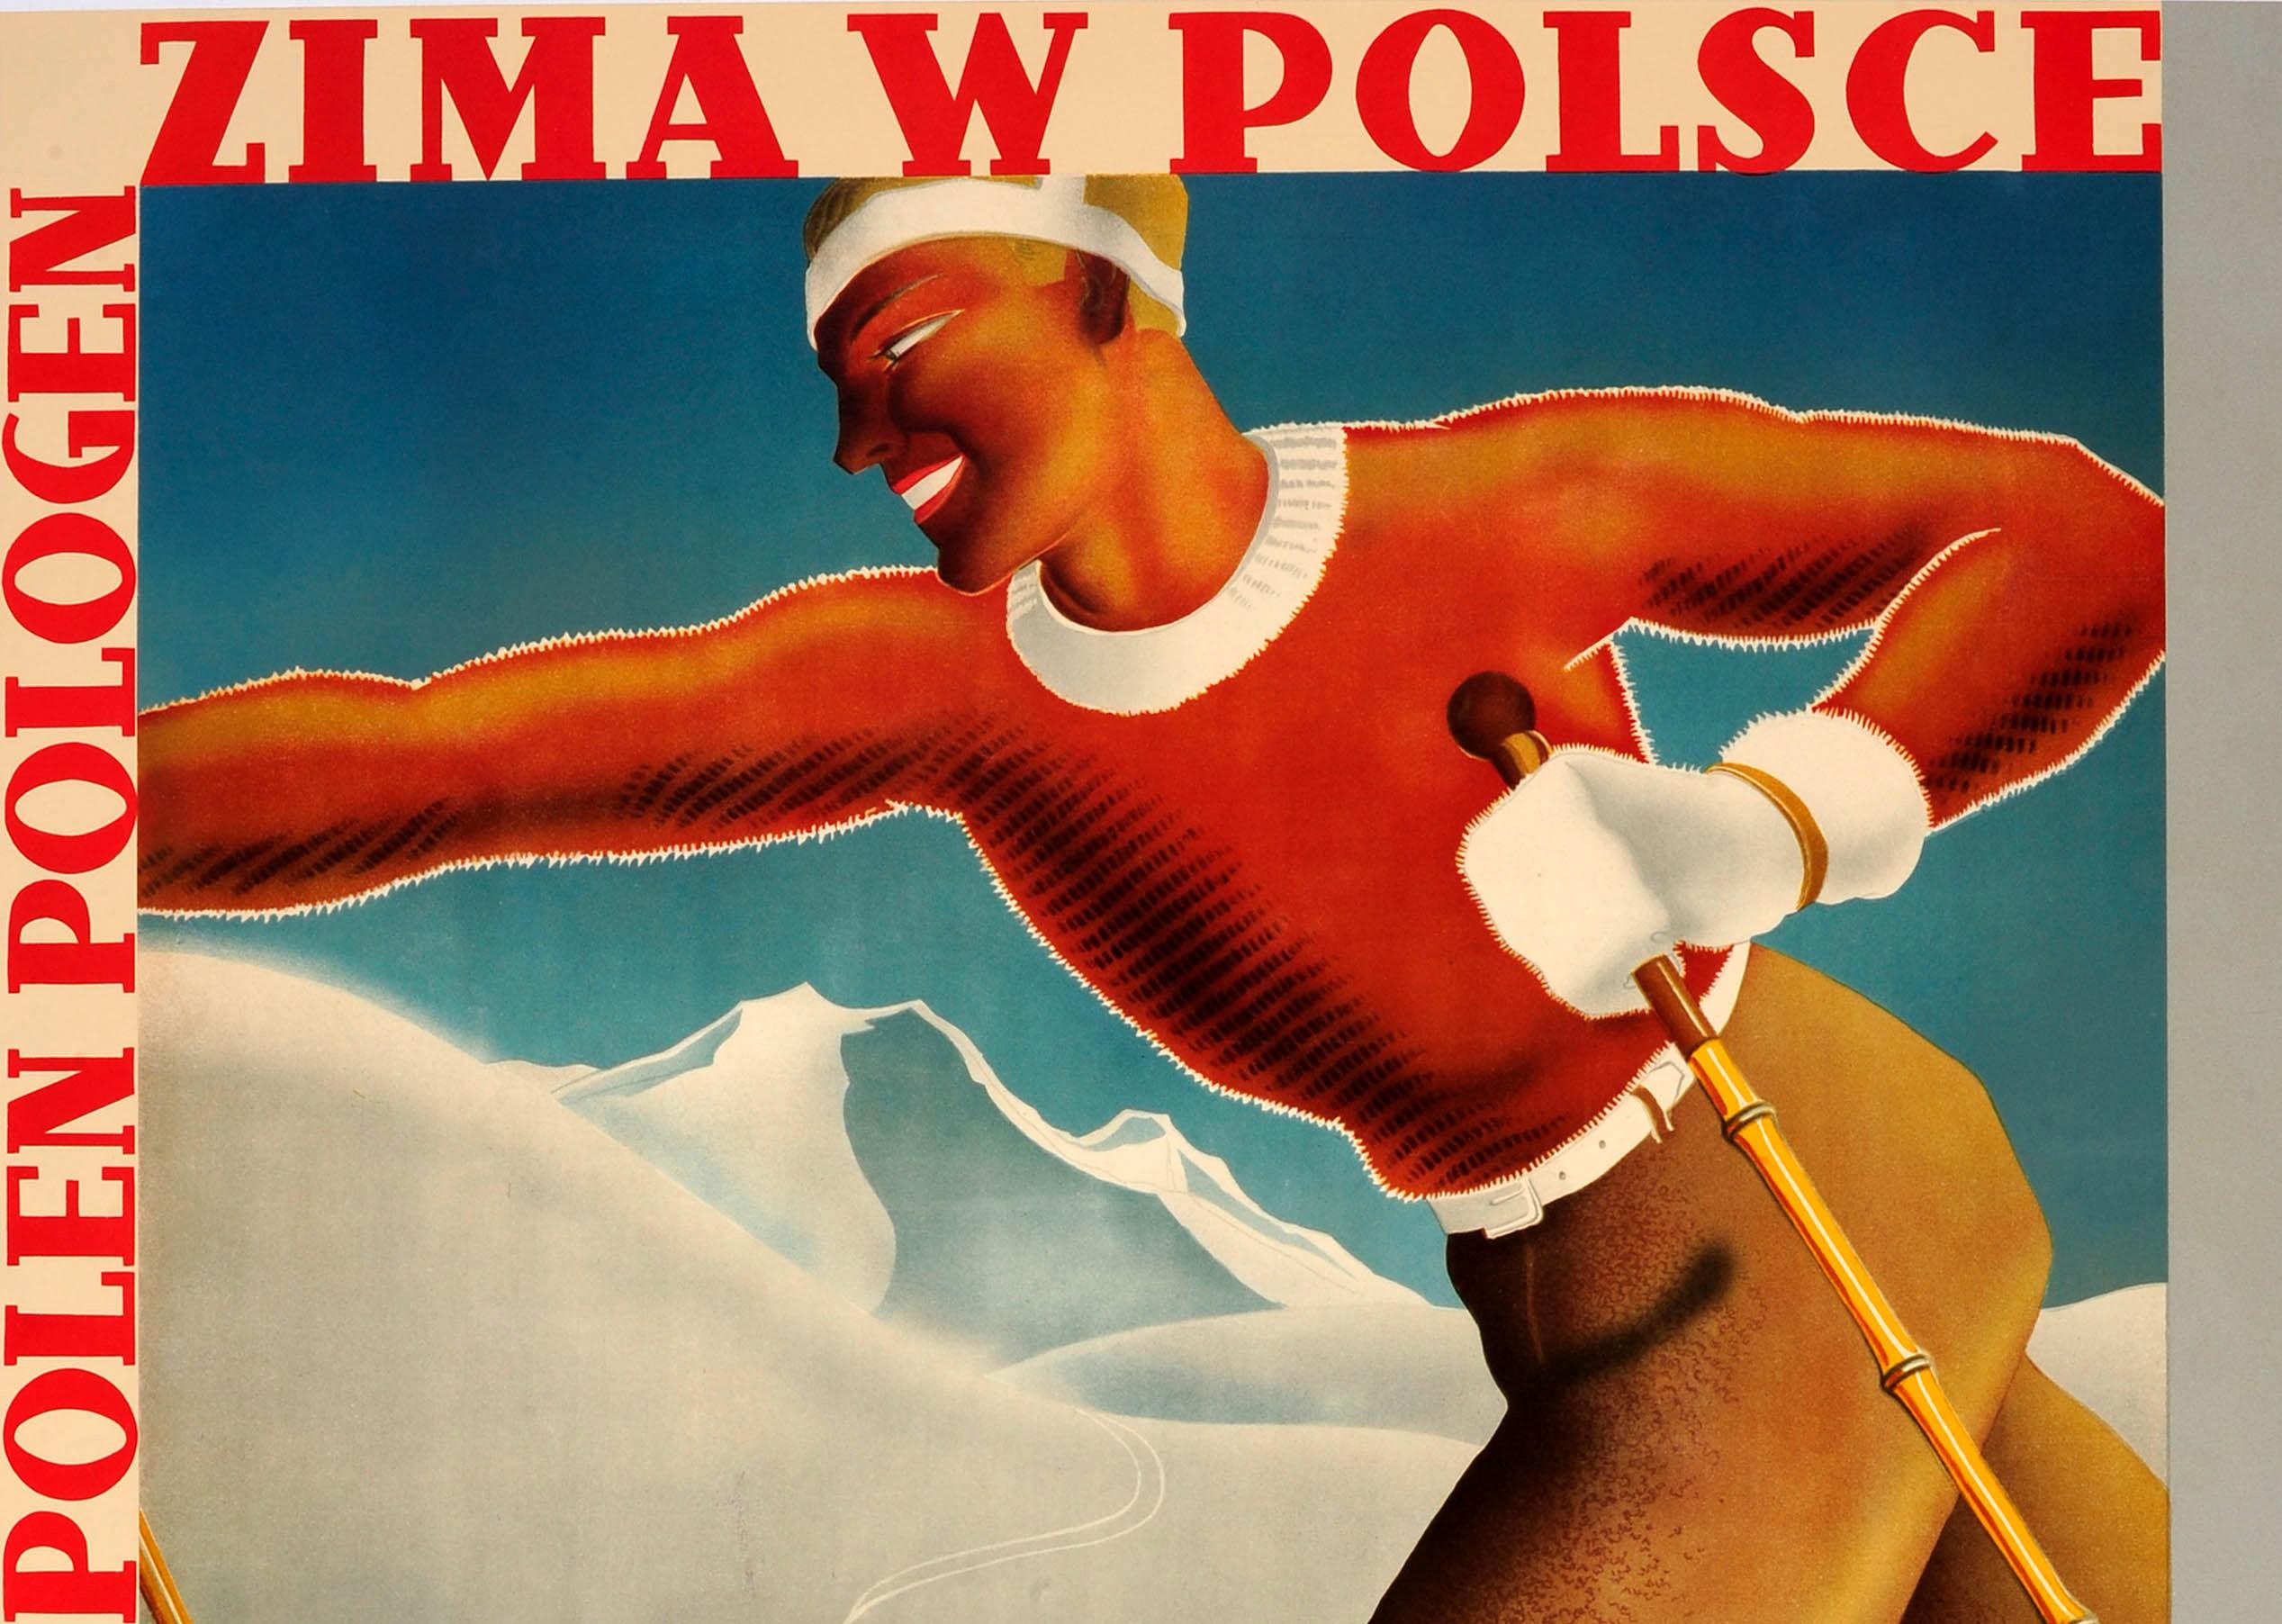 Original Vintage Art Deco Winter Sport Ski Poster Winter In Poland Zima W Polsce - Print by Roman Wylcan and Wladyslaw Rozanski